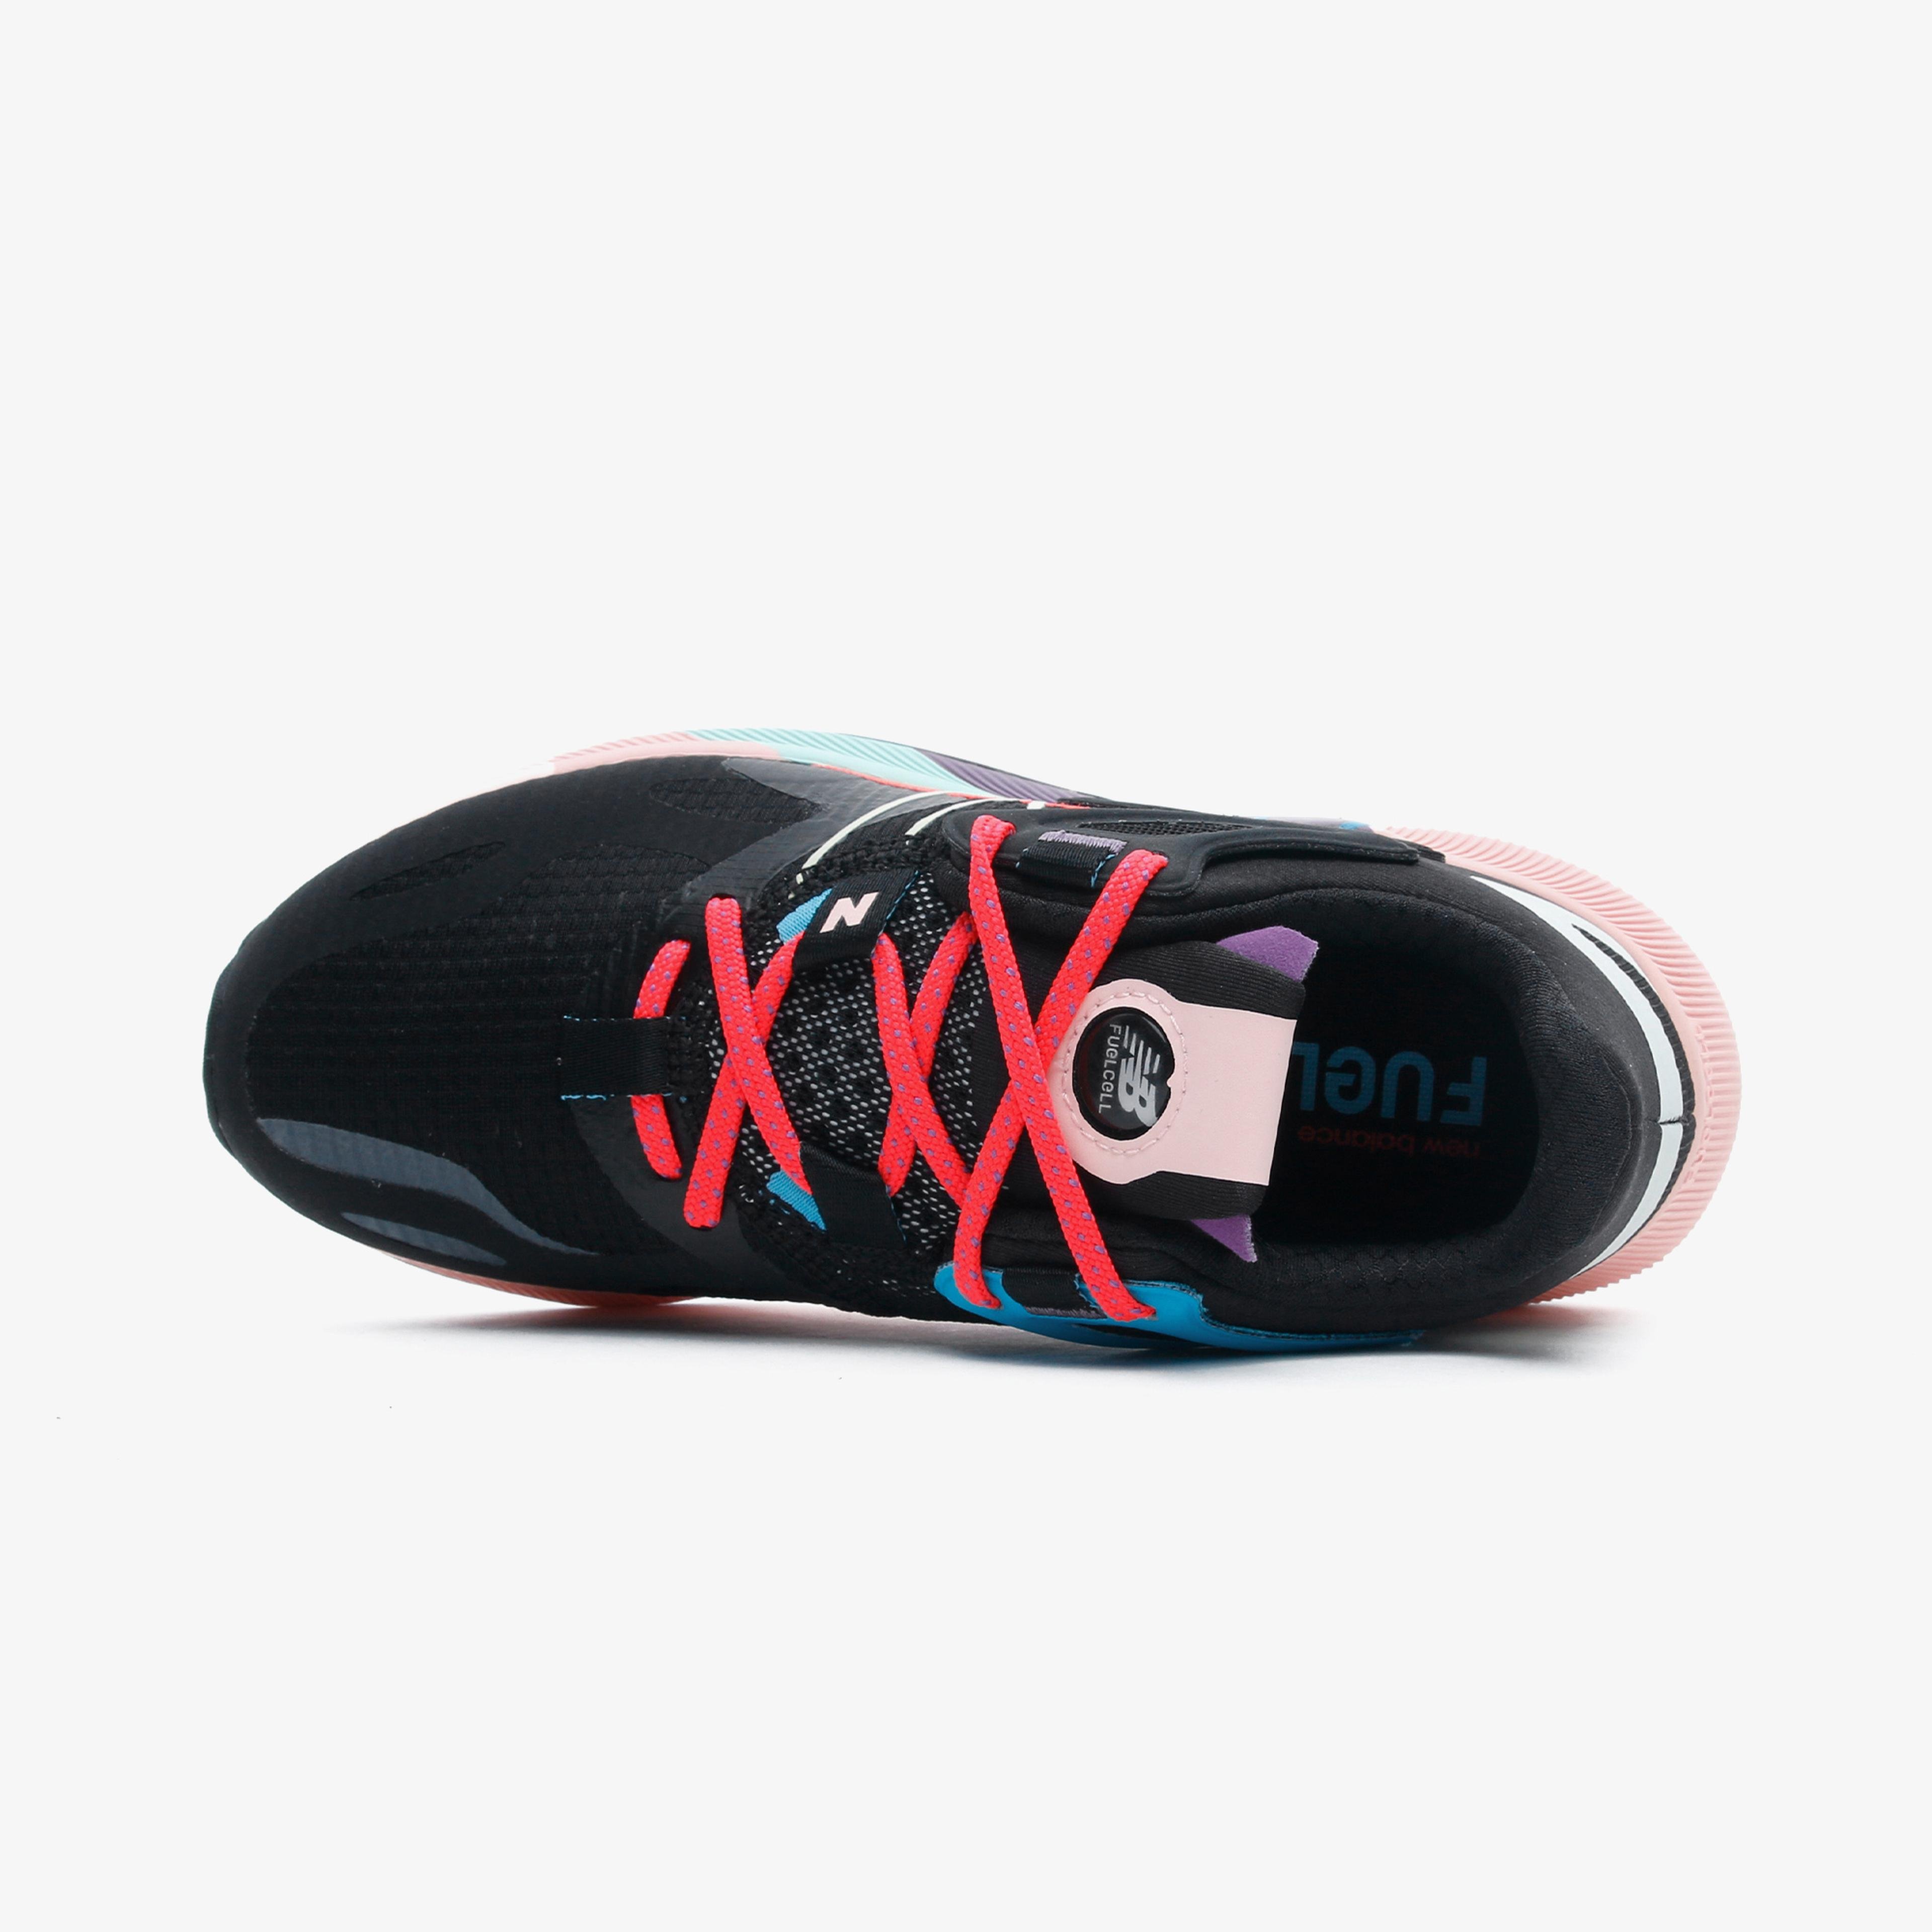 New Balance RMX Kadın Renkli Spor Ayakkabı